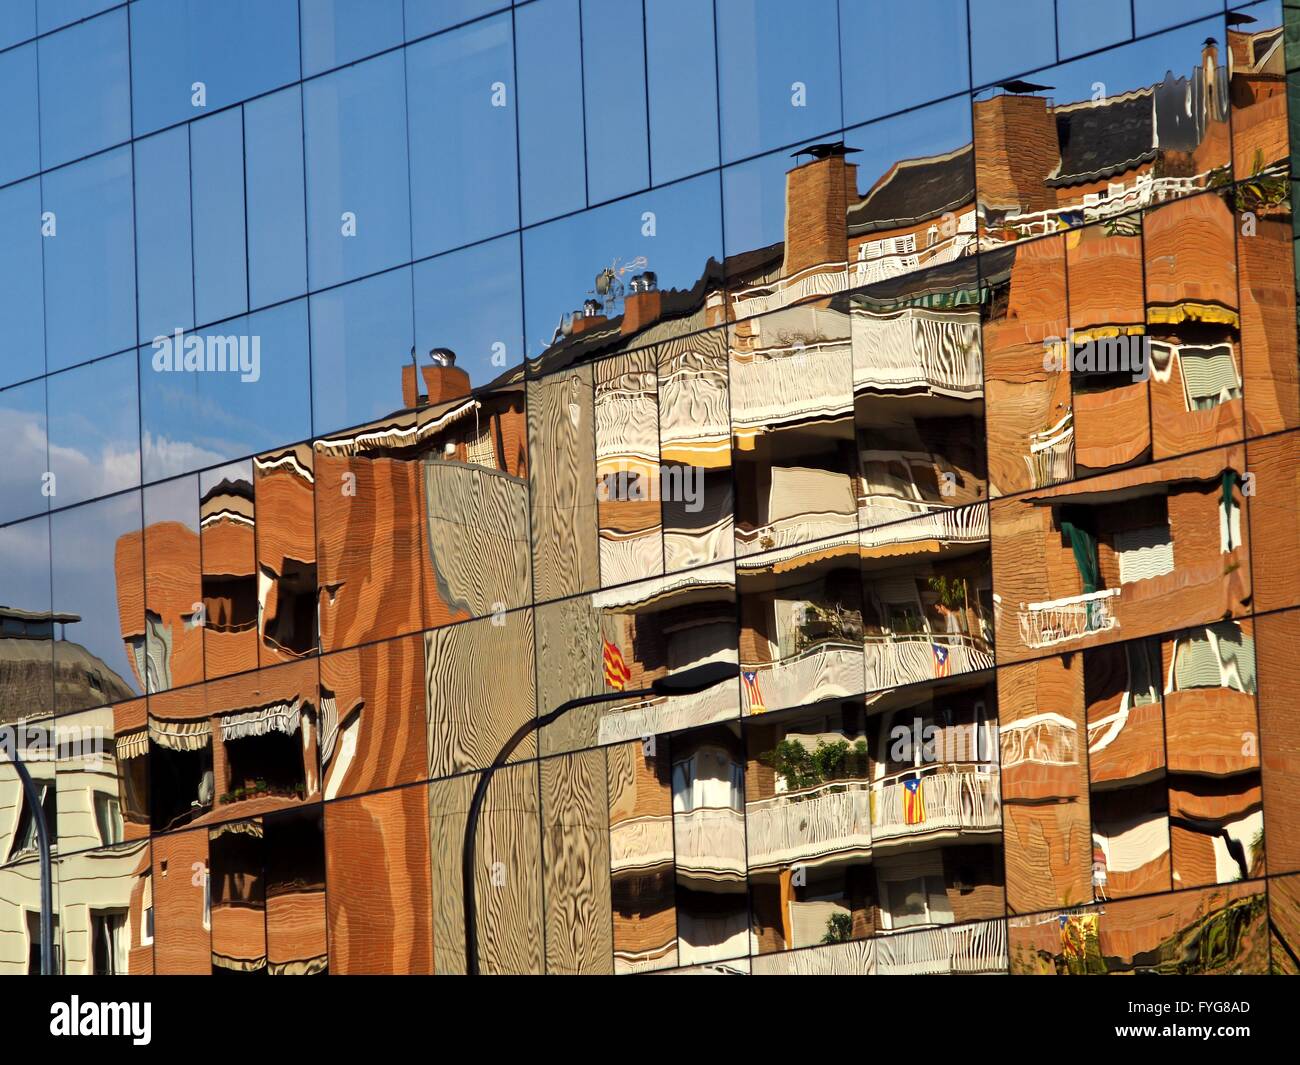 Reflet d'immeuble d'appartements à Barcelone dans une façade de verre office building d'en face Banque D'Images